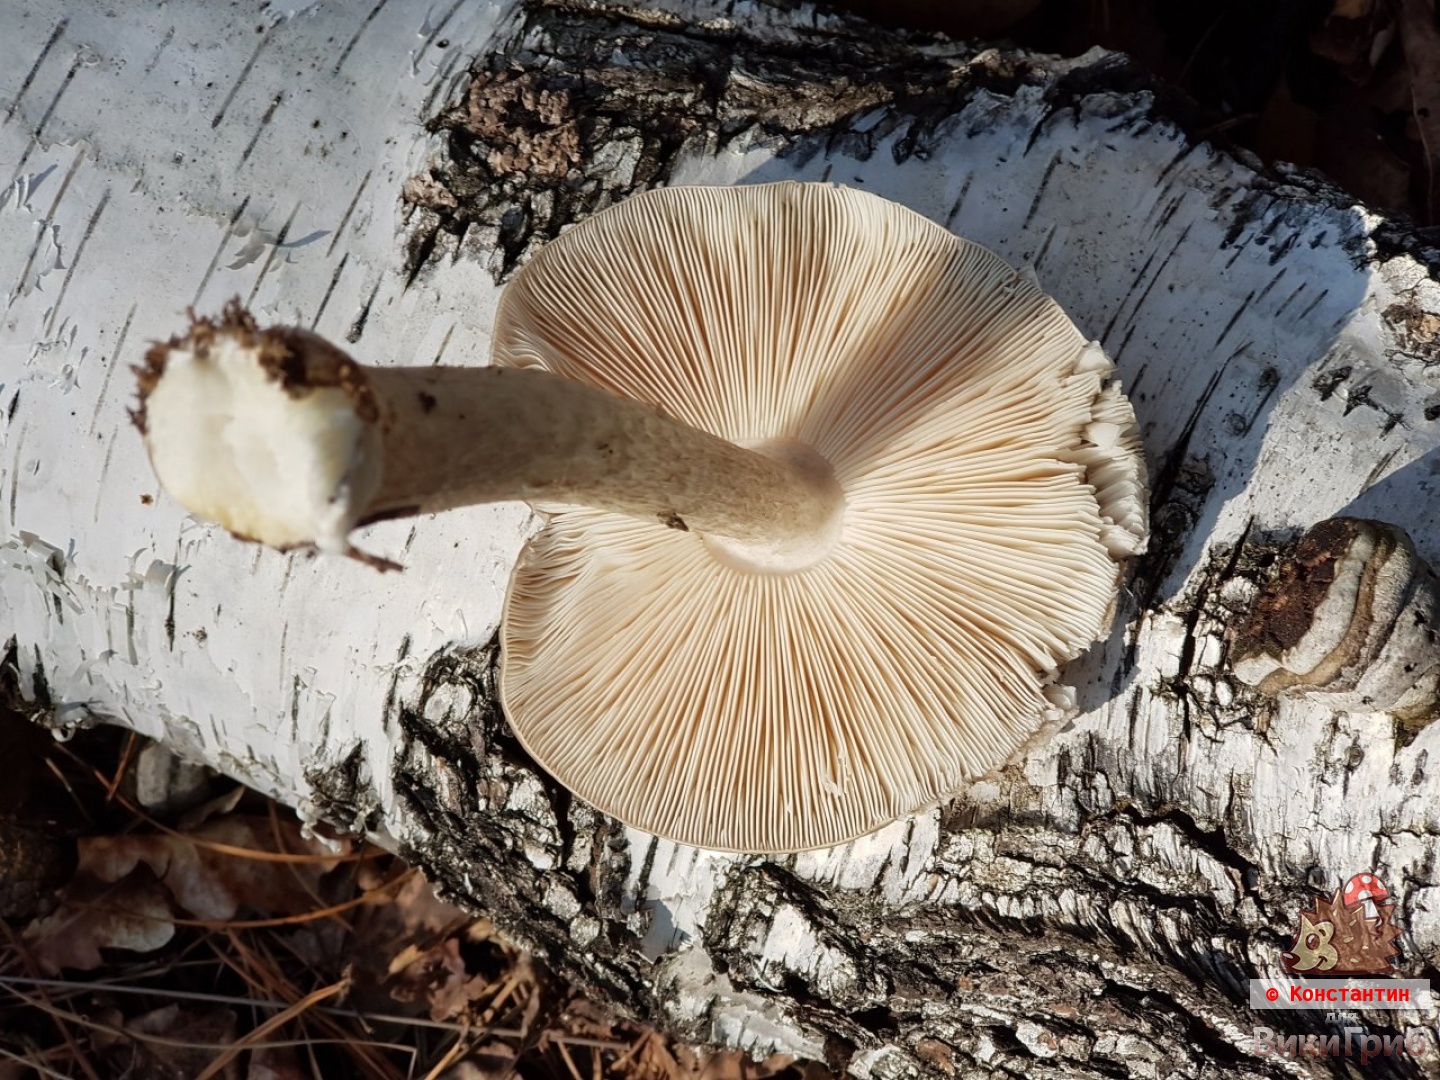 Pluteus cervinus - Олений гриб